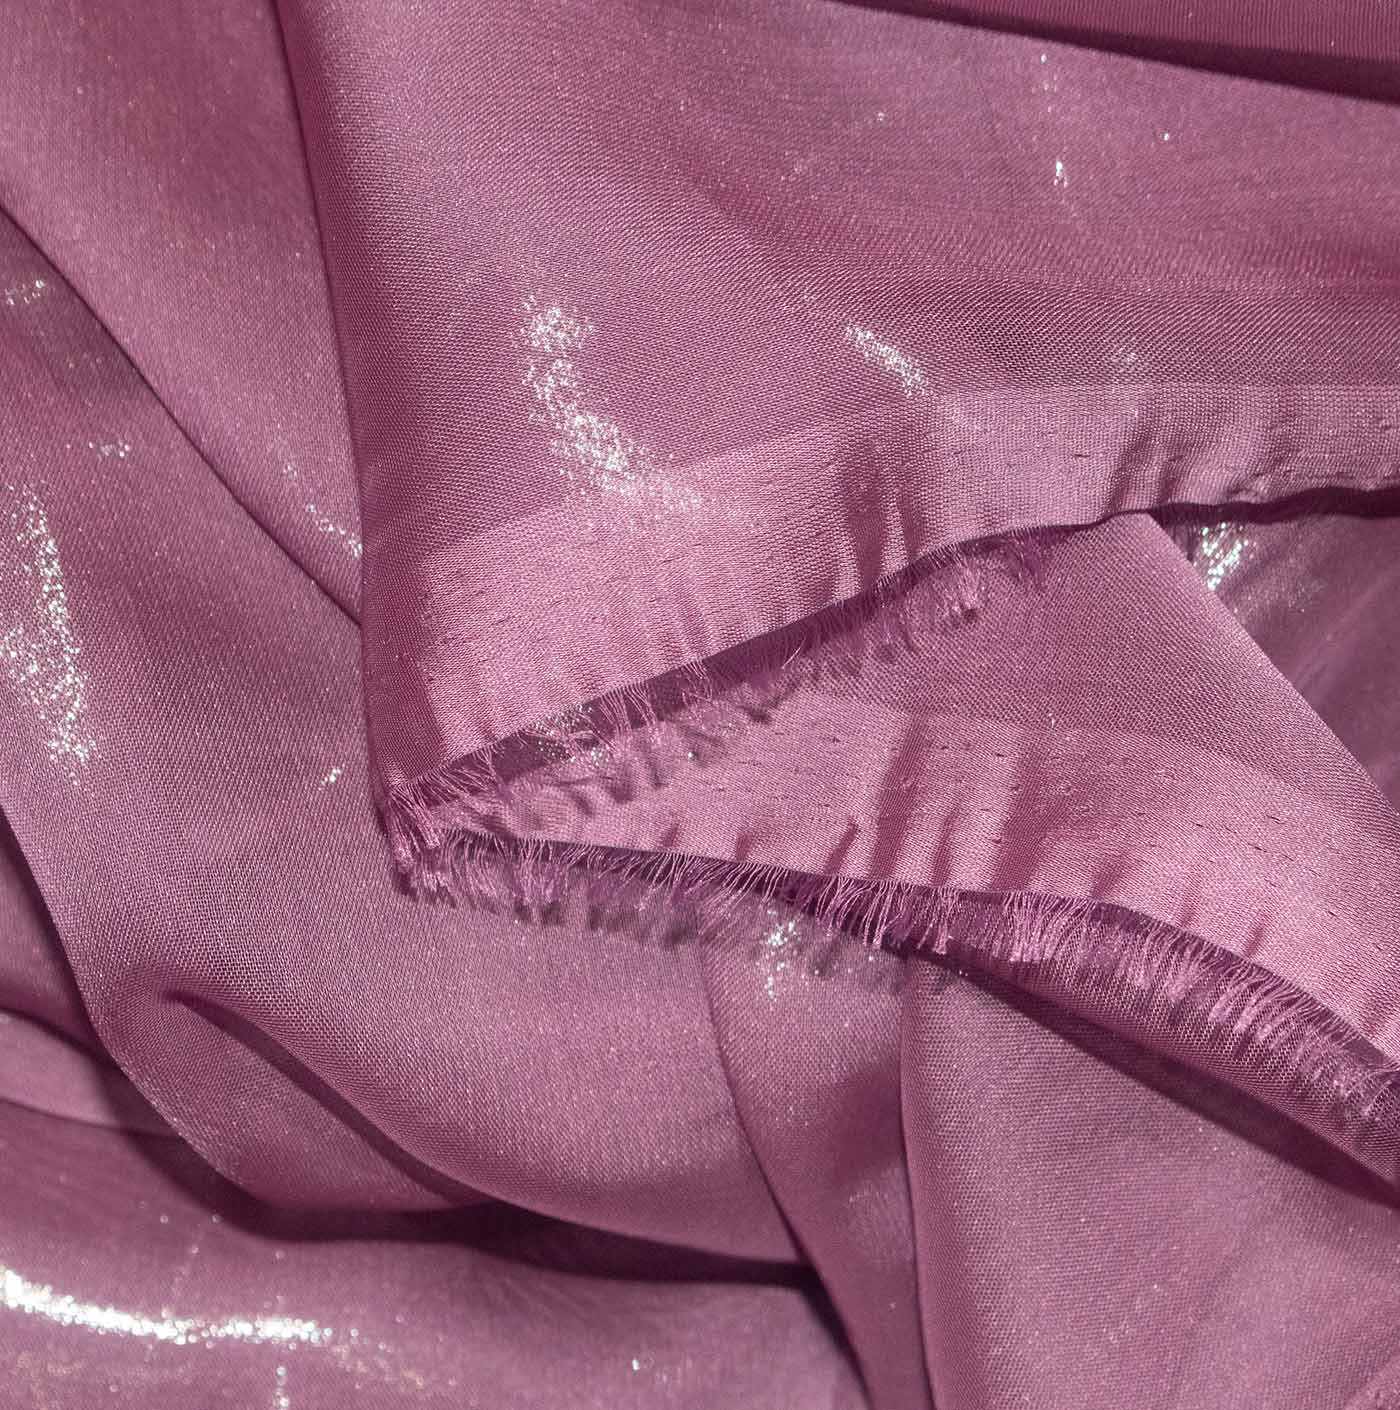 Purple Cationic Chiffon Fabric